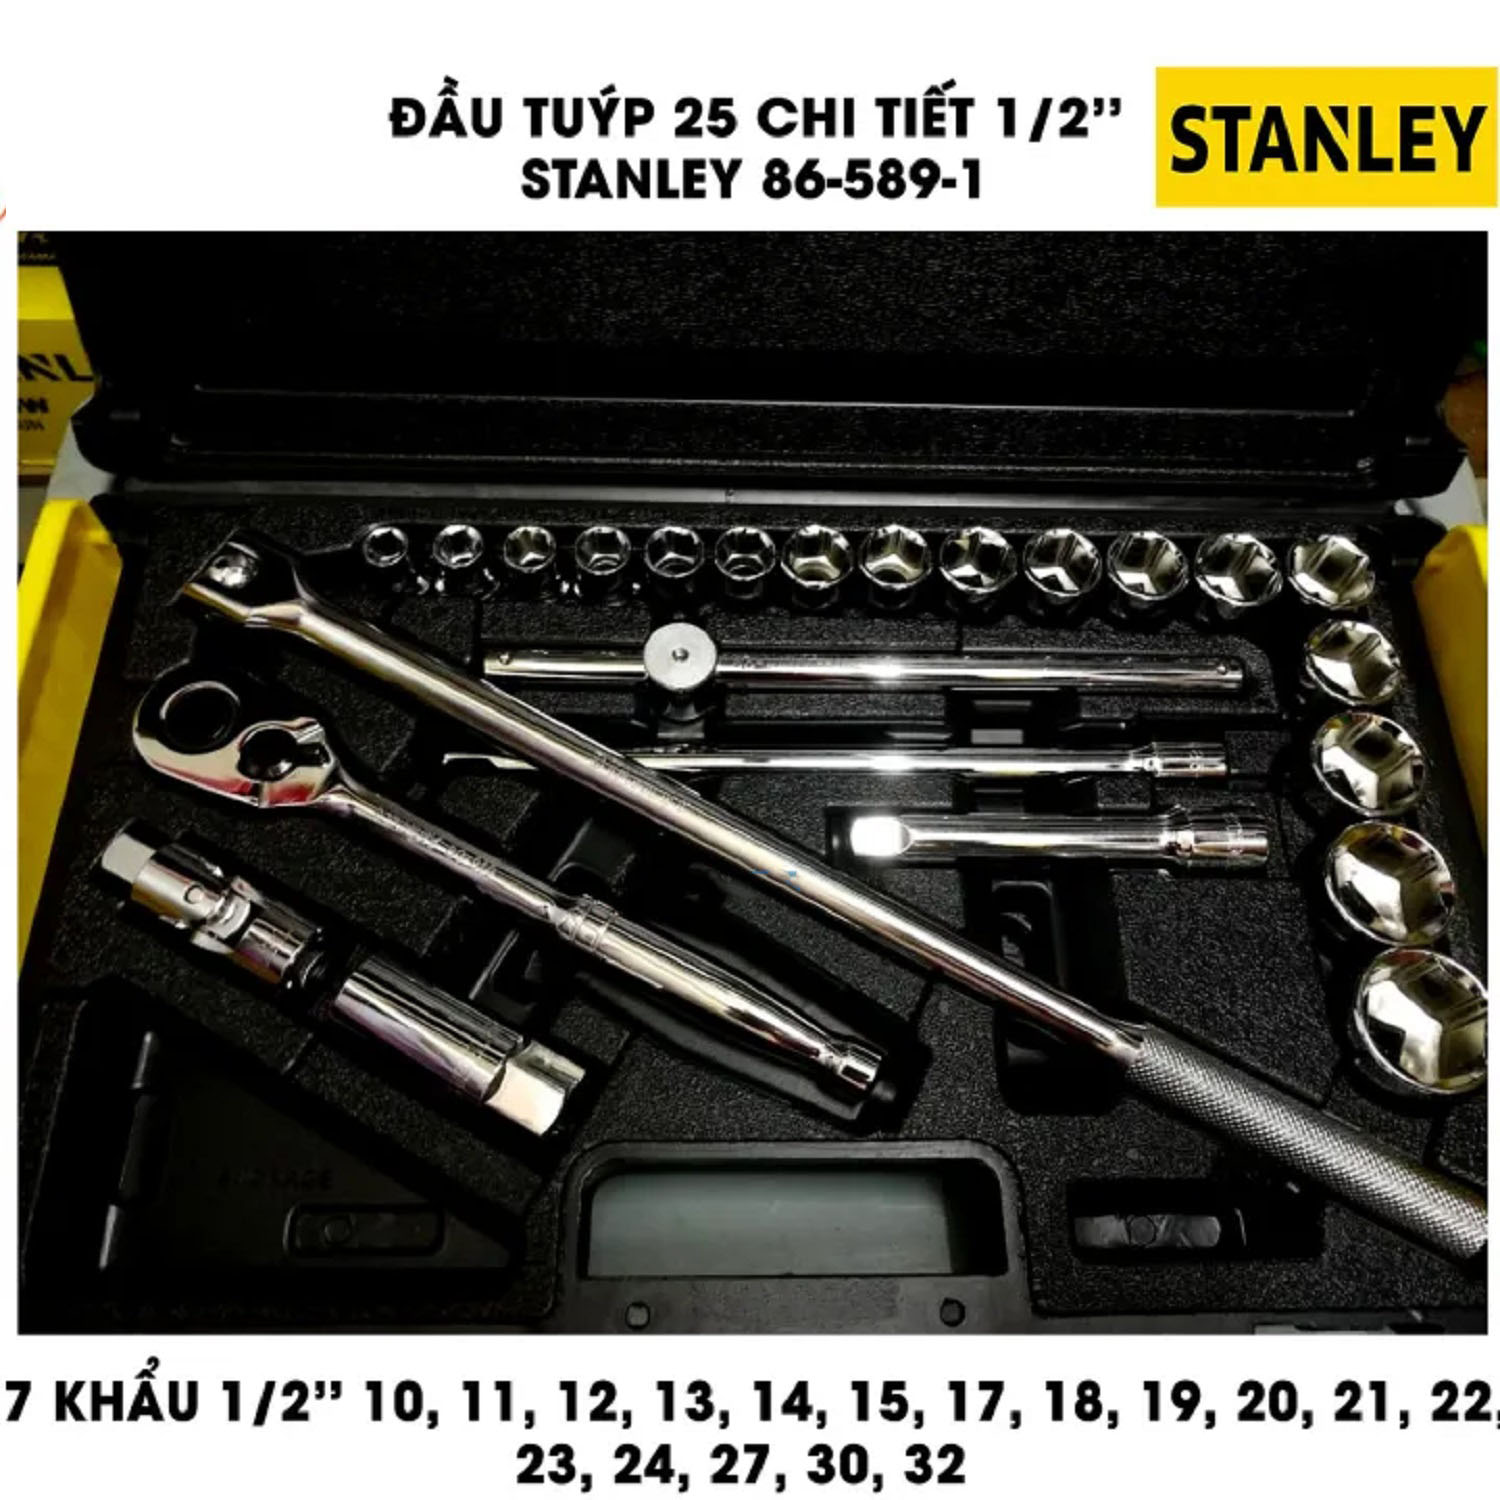 Hình ảnh 4 của mặt hàng Đầu tuýp bộ khẩu Stanley 86-589-1